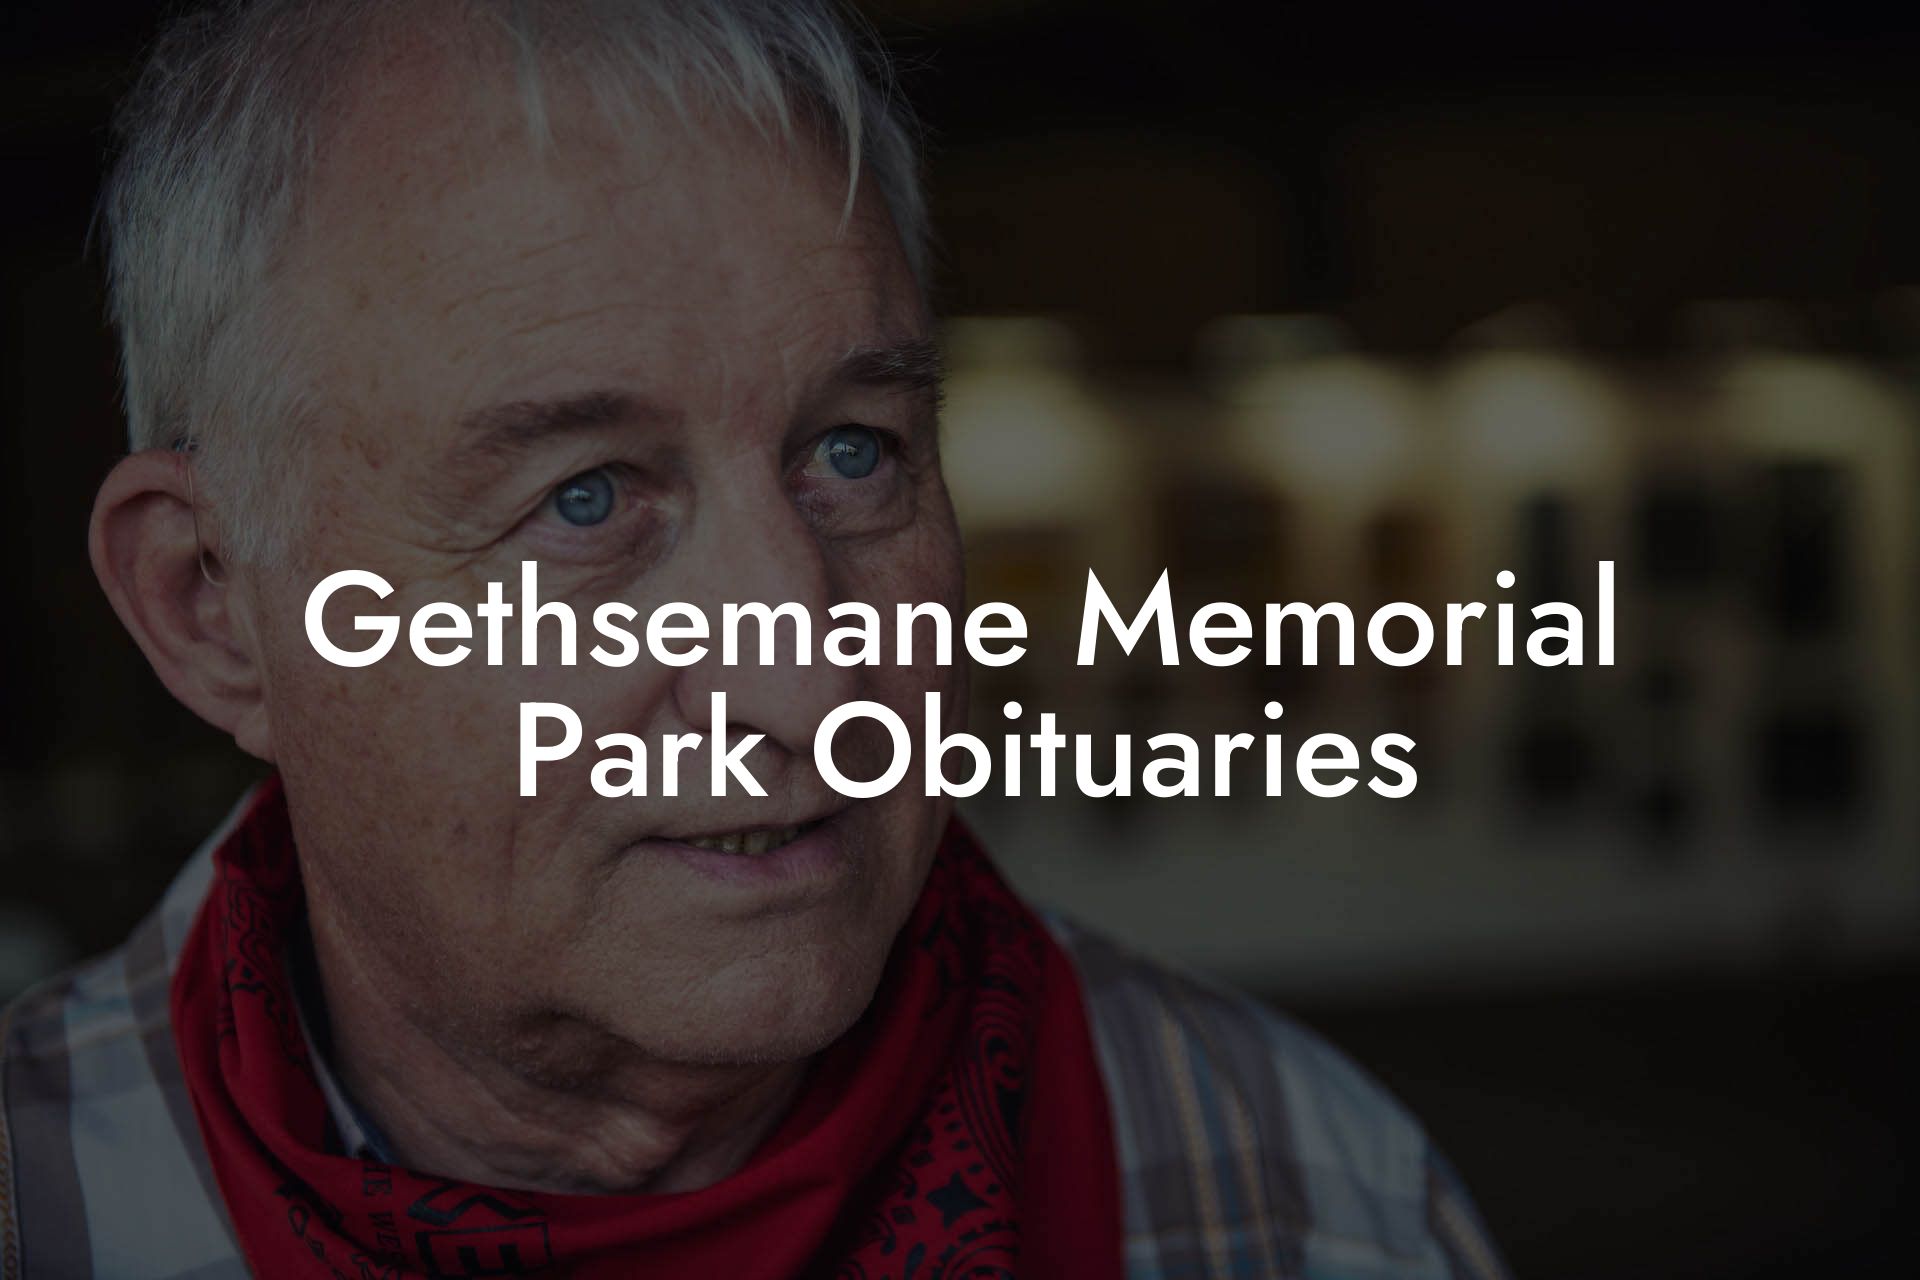 Gethsemane Memorial Park Obituaries